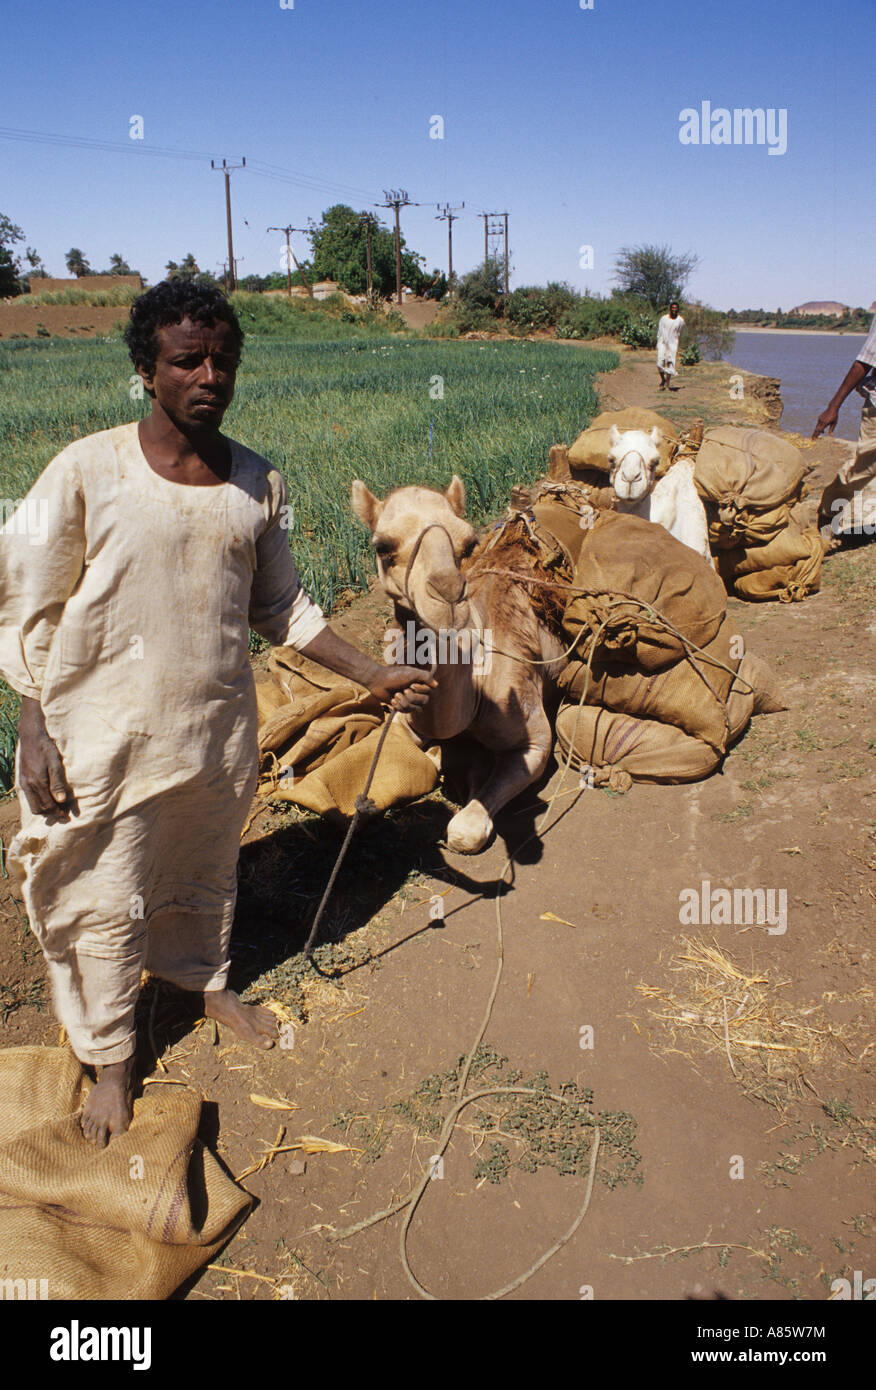 man with camel nuri sudan Stock Photo